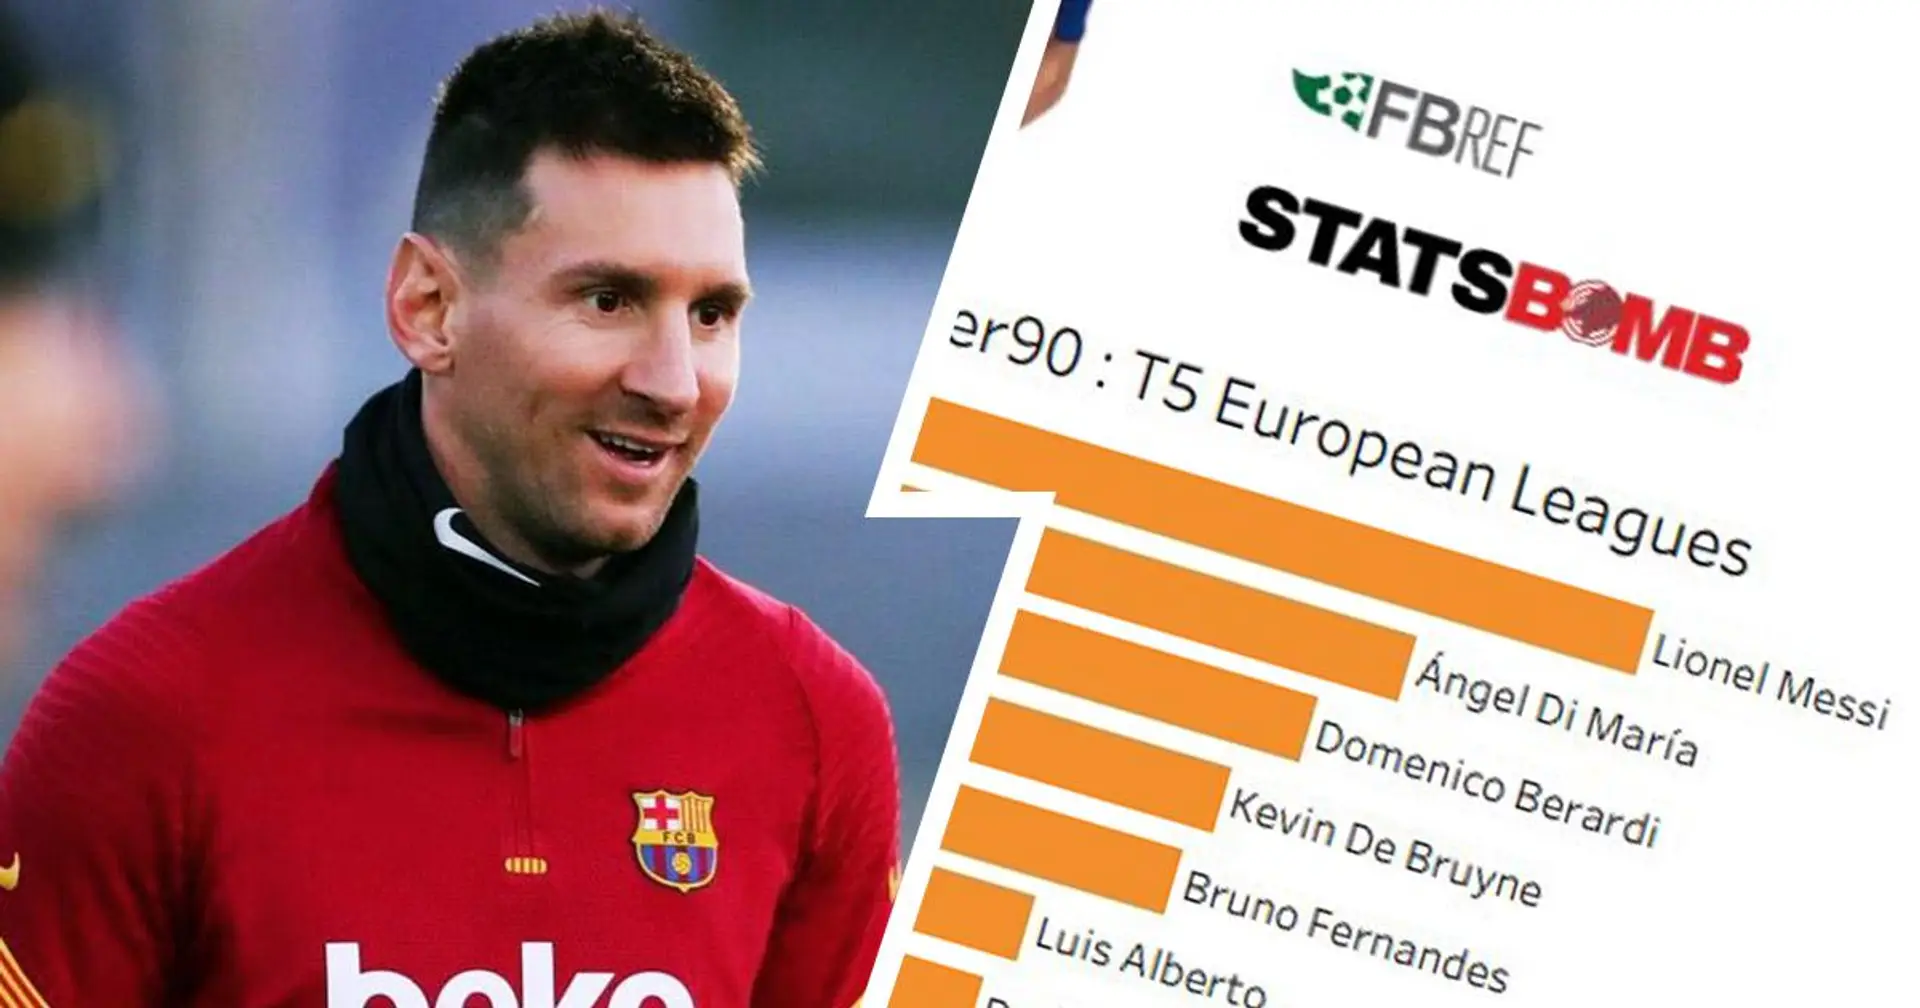 Meilleur créateur du monde: Messi est en tête dans 3 statistiques de jeu dans les 5 grands championnats européens en 2020/21